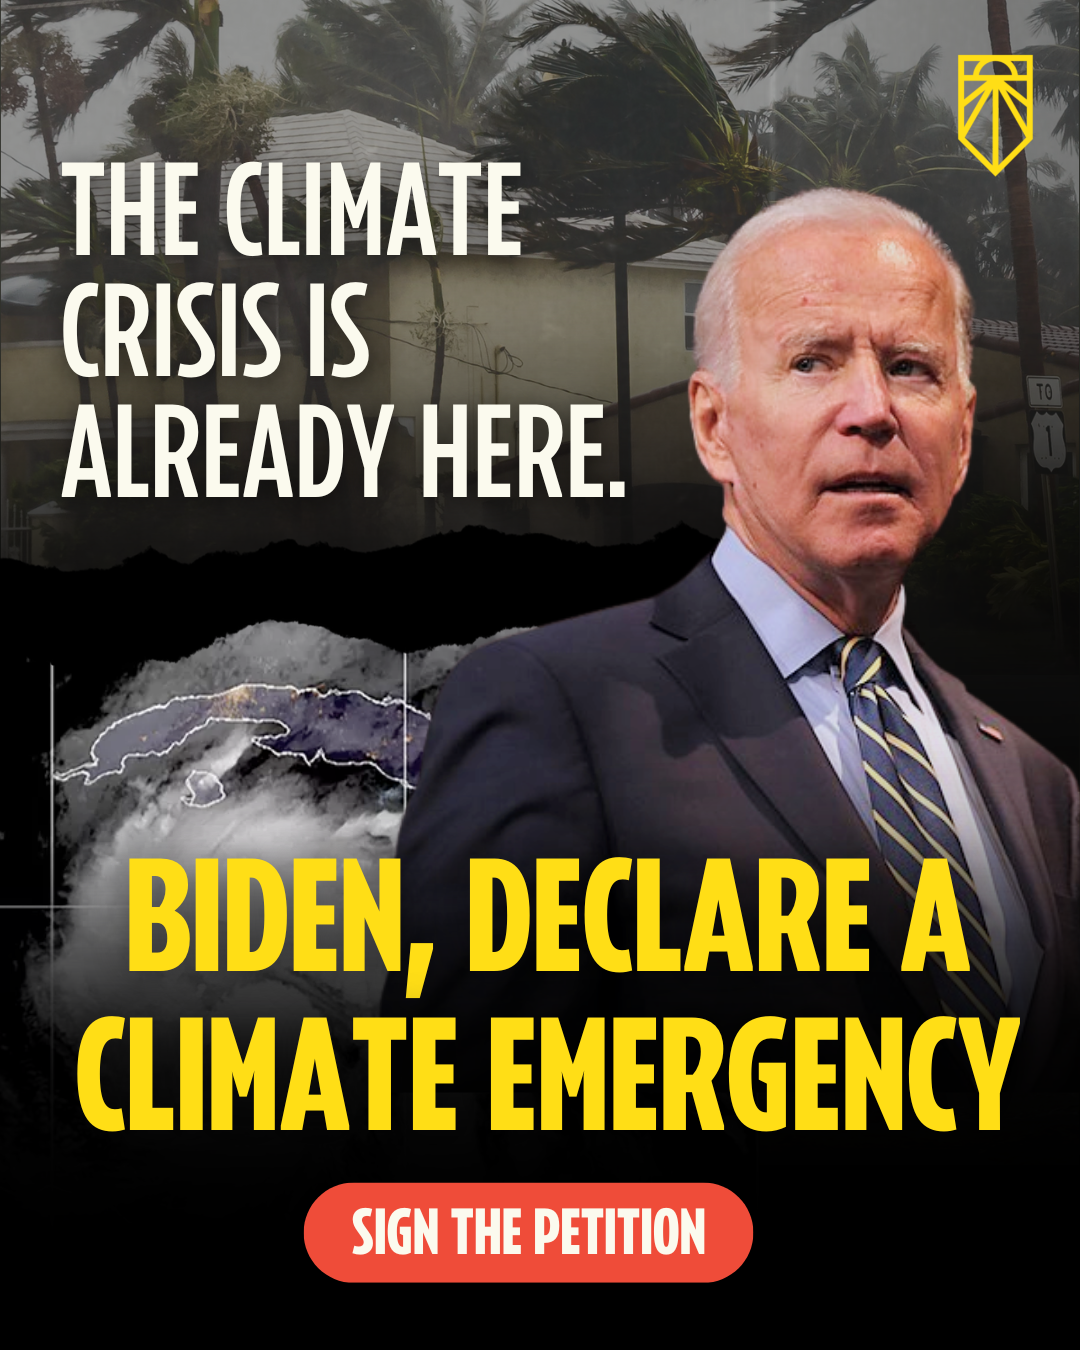 La crise climatique est déjà là. Biden, Déclarez une urgence climatique. Signer la pétition.